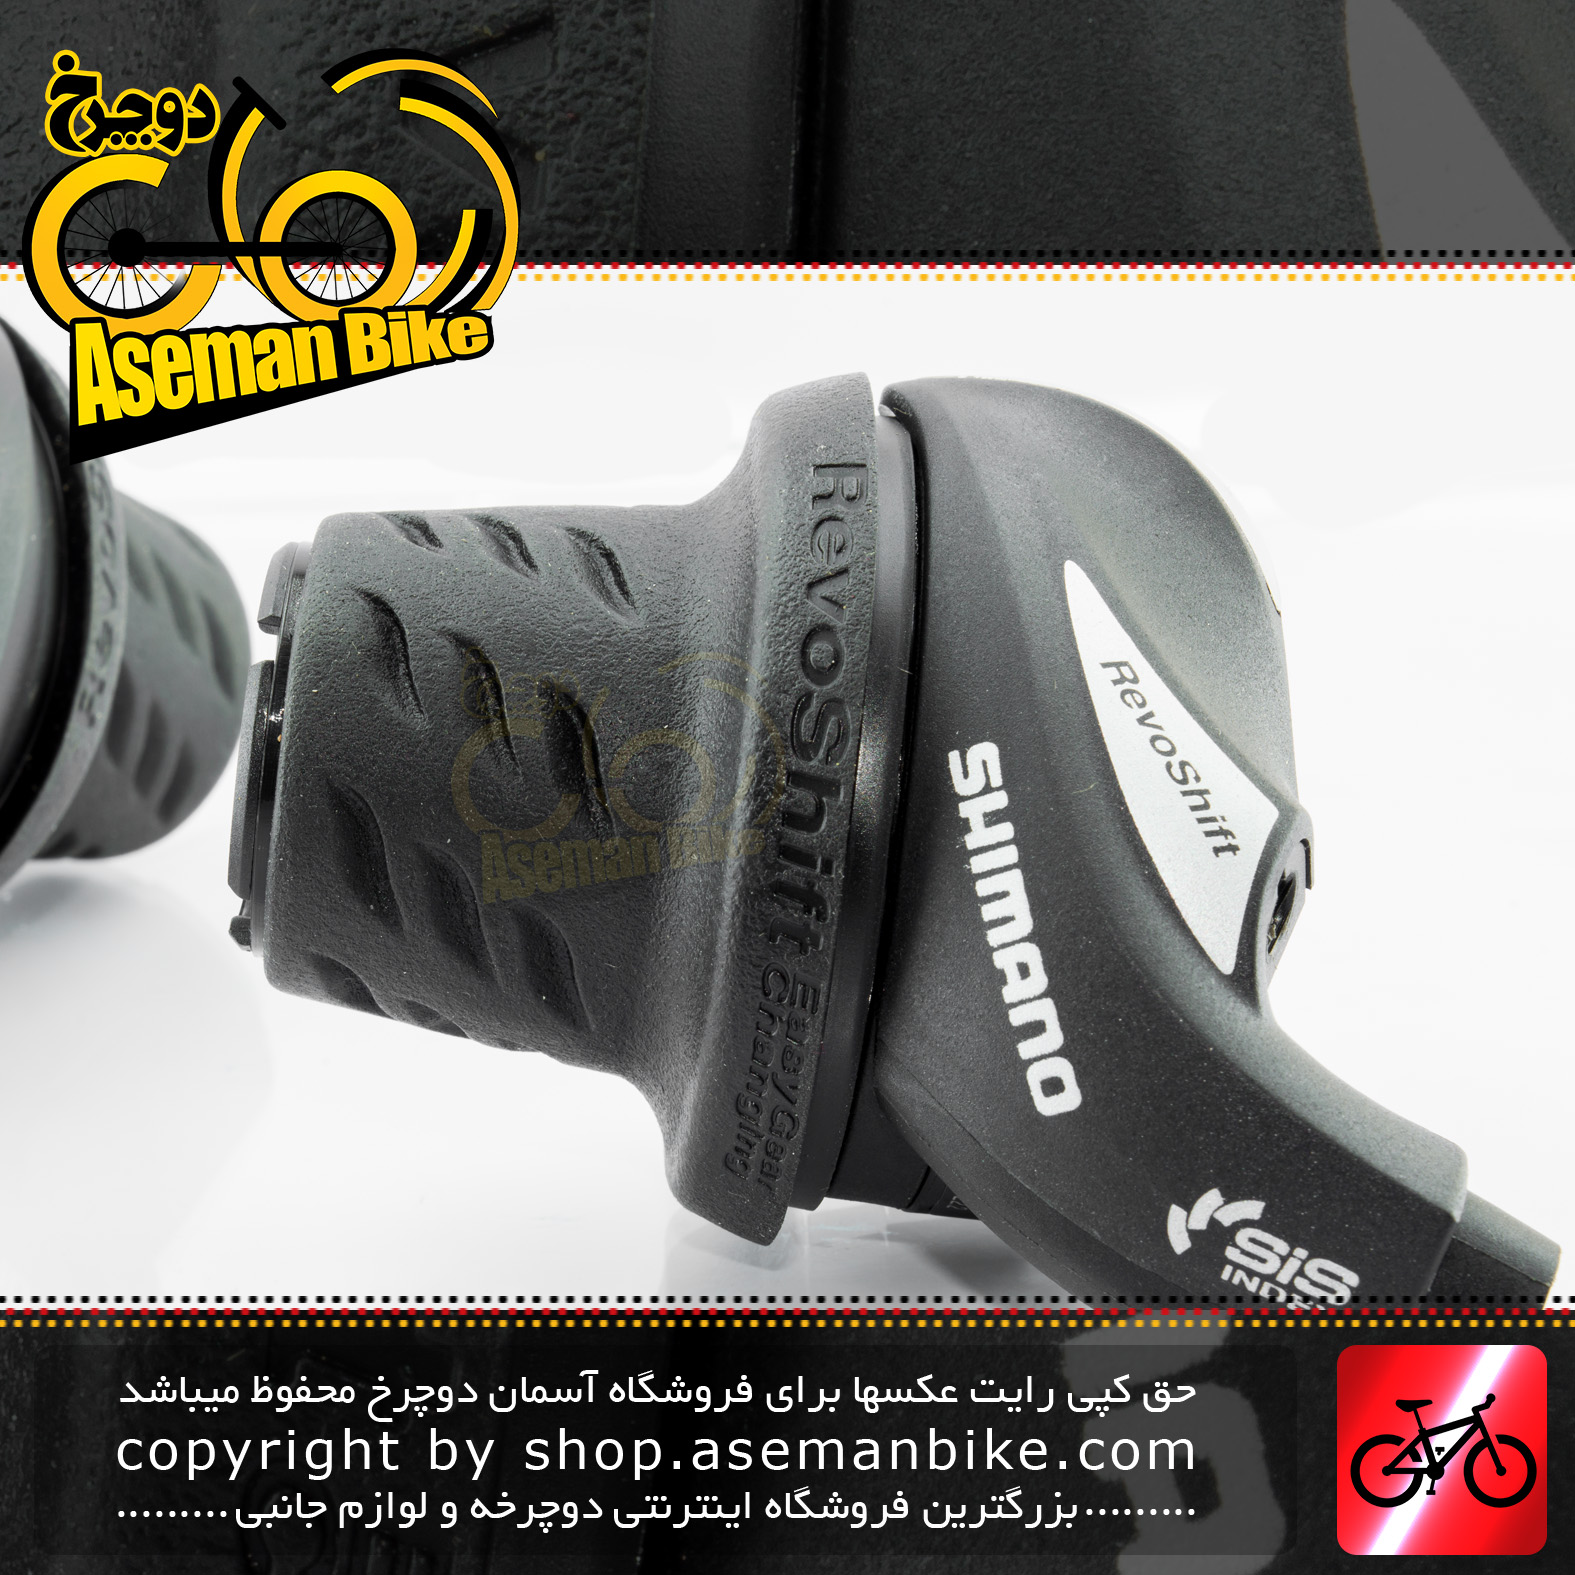 دسته دنده موتوری وسپایی دوچرخه شیمانو مدل آر اس 36 3 در 7 سرعته Shimano Bicycle Shifting Lever Set Revoshift SL-RS36 3×7 Speed